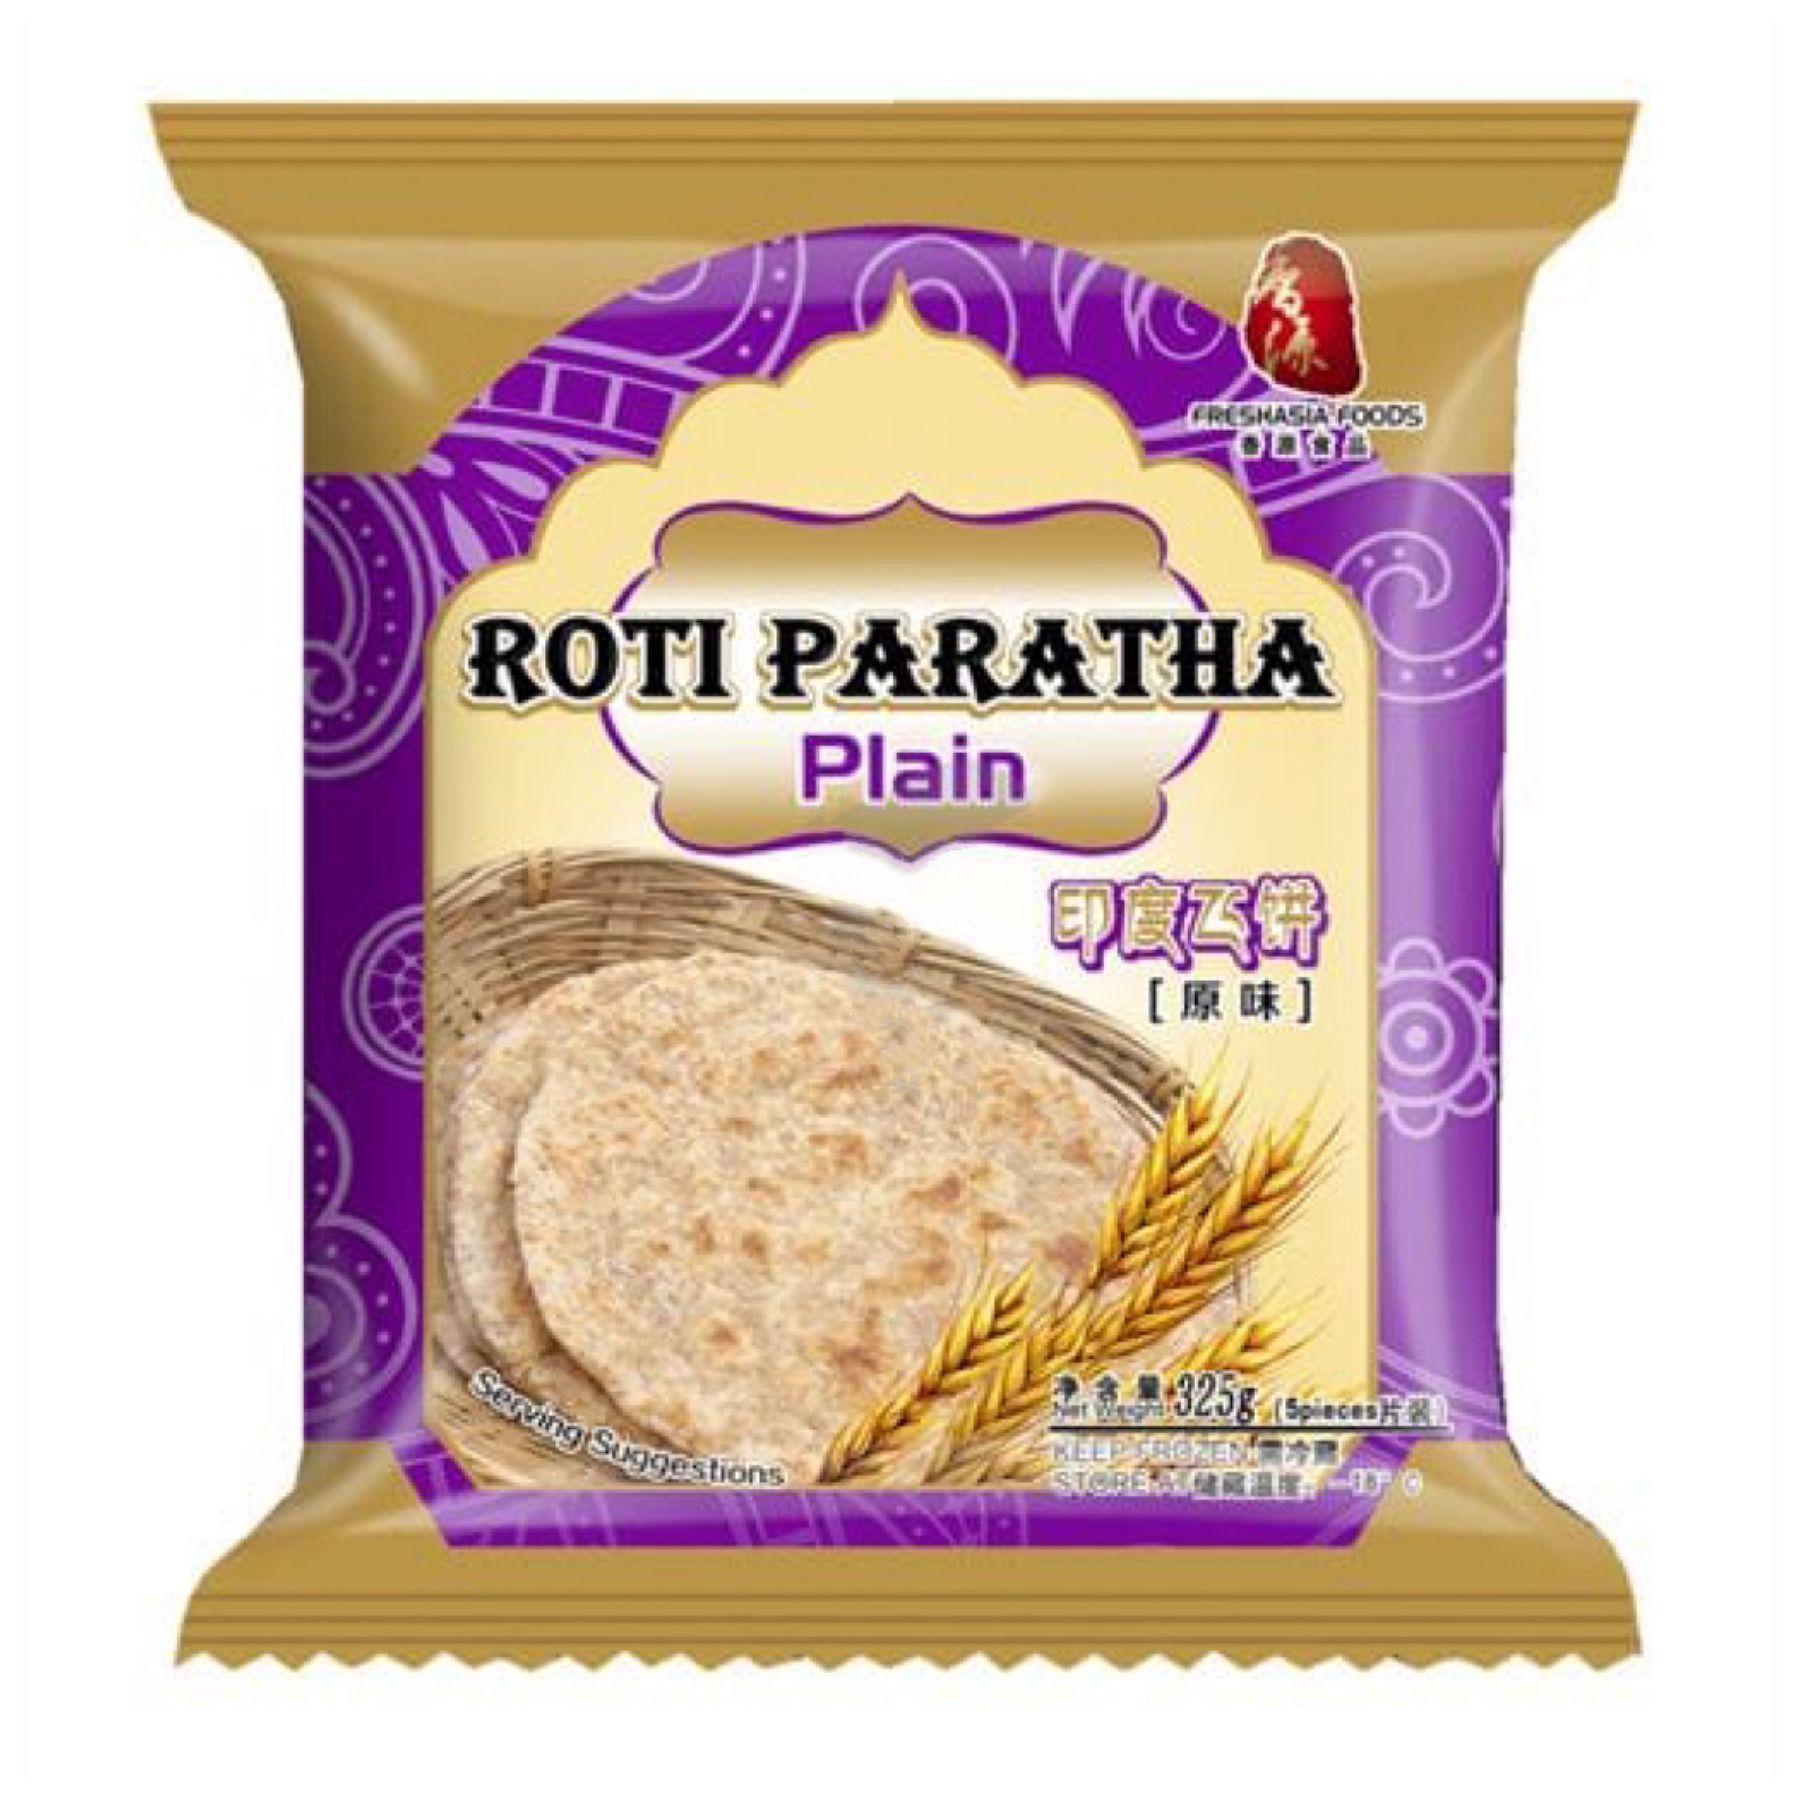 FRESHASIA Plain Roti Paratha 325g